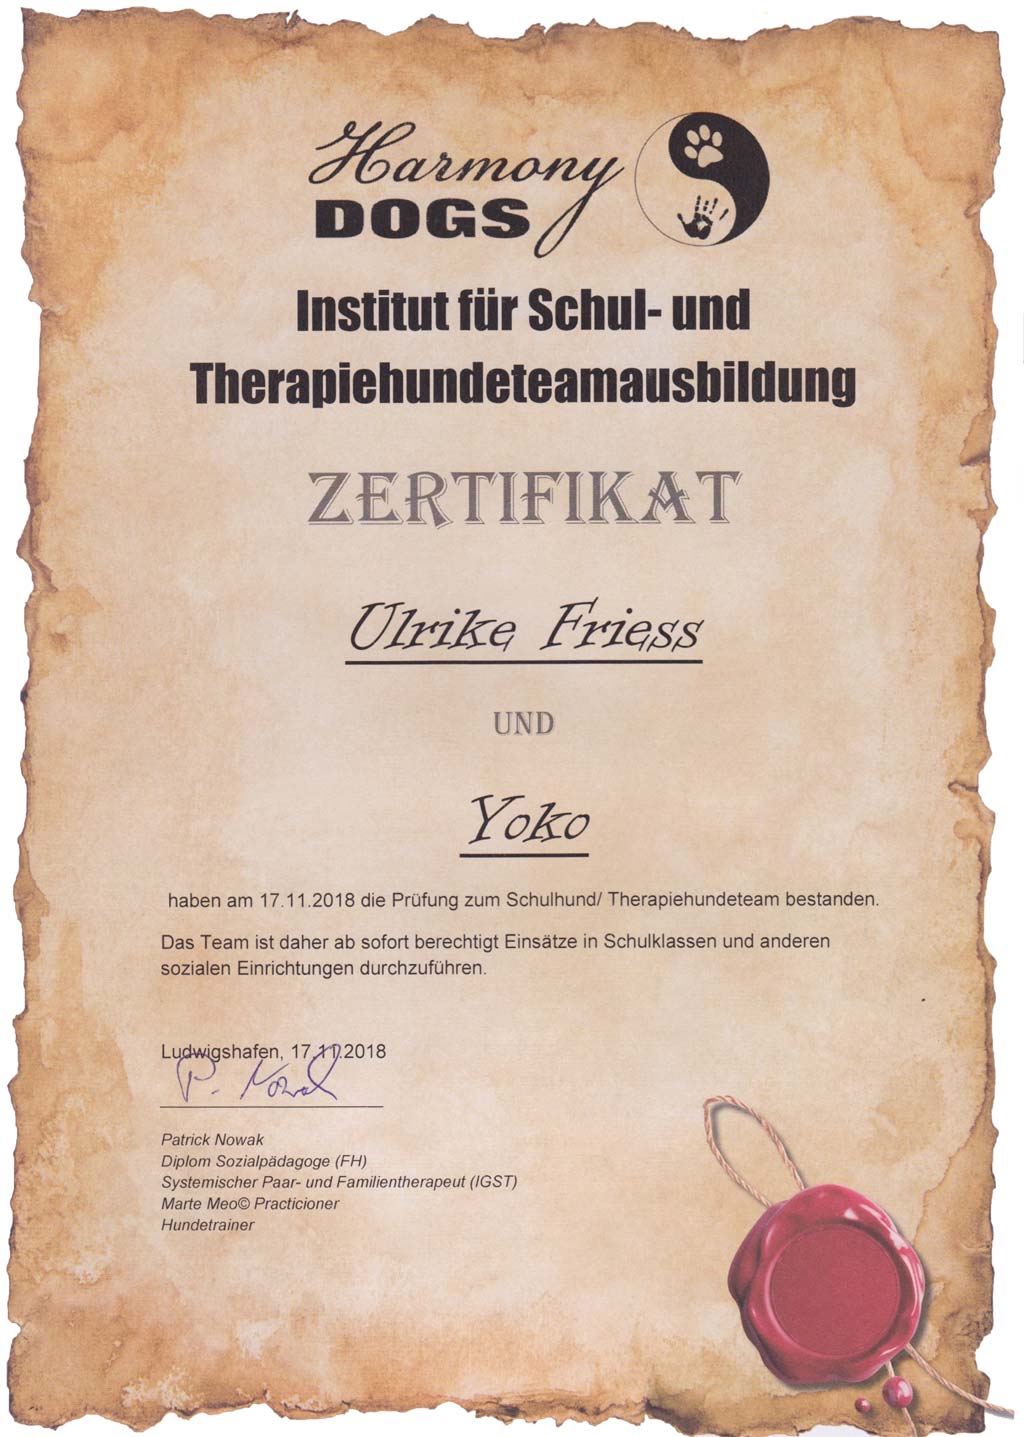 Zertifikat für Therapiehundeausbildung mit Yoko und Ulrike